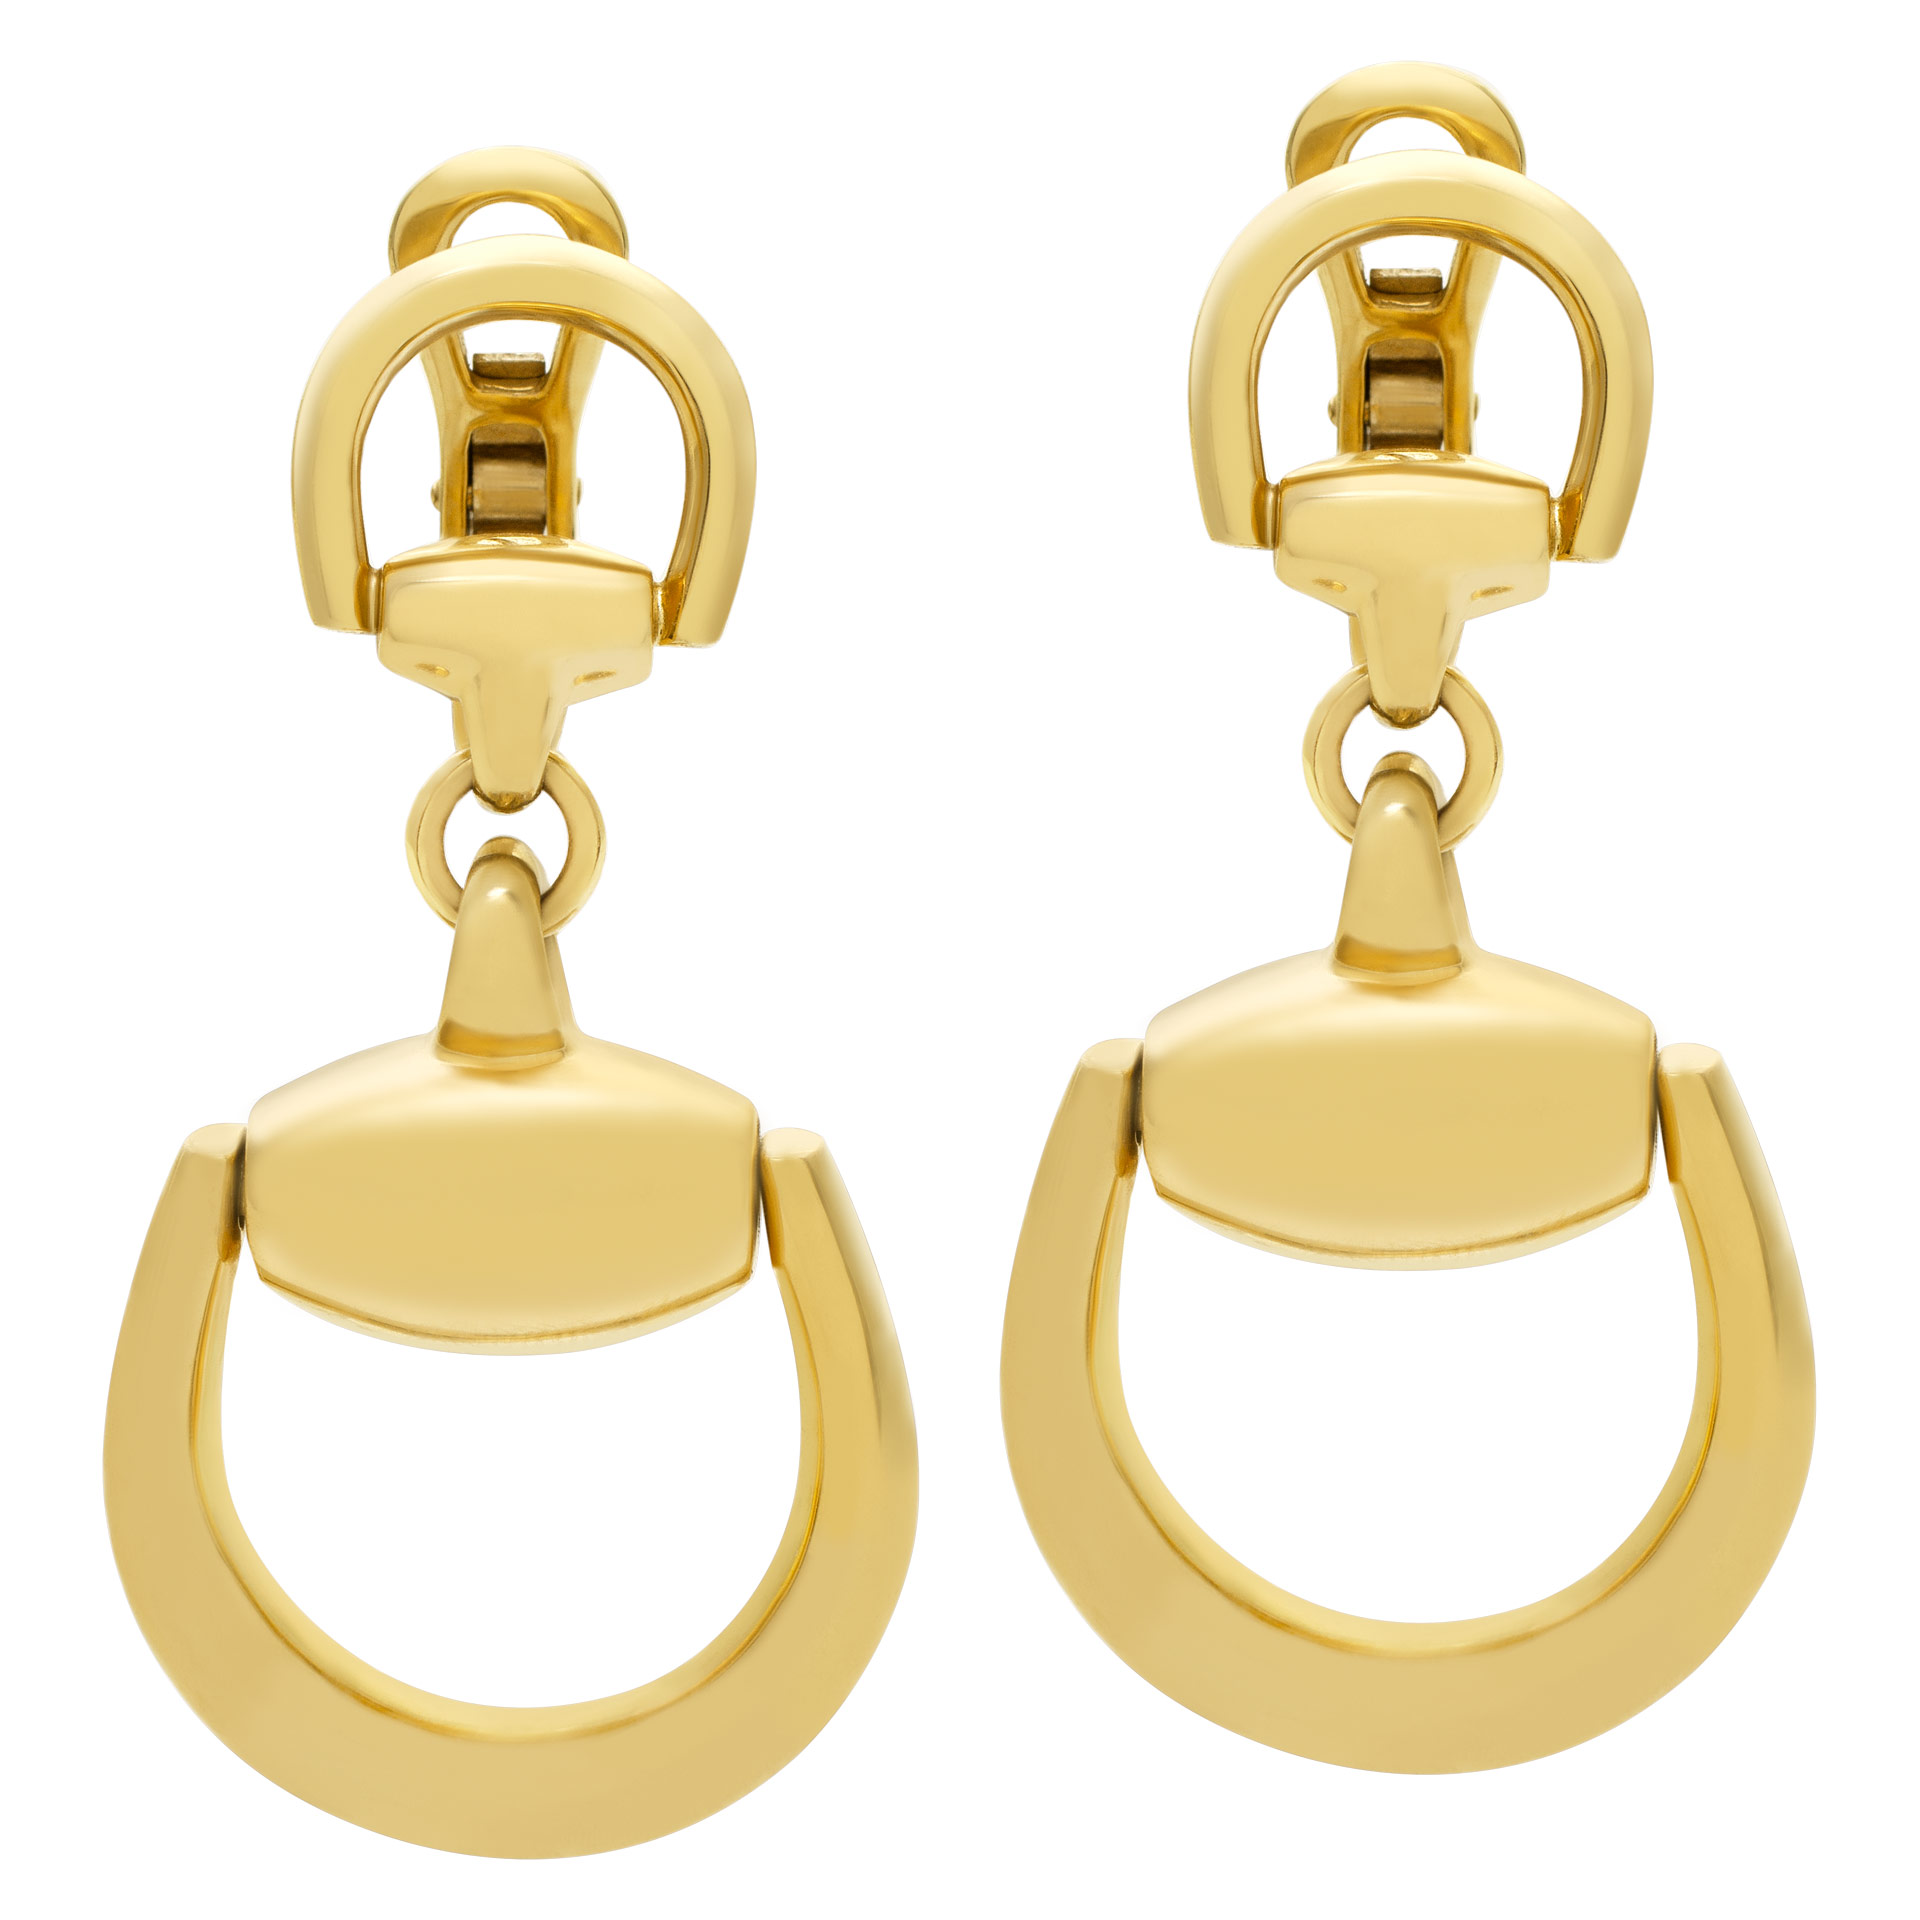 Gucci Horsebit earrings in 18K yellow 